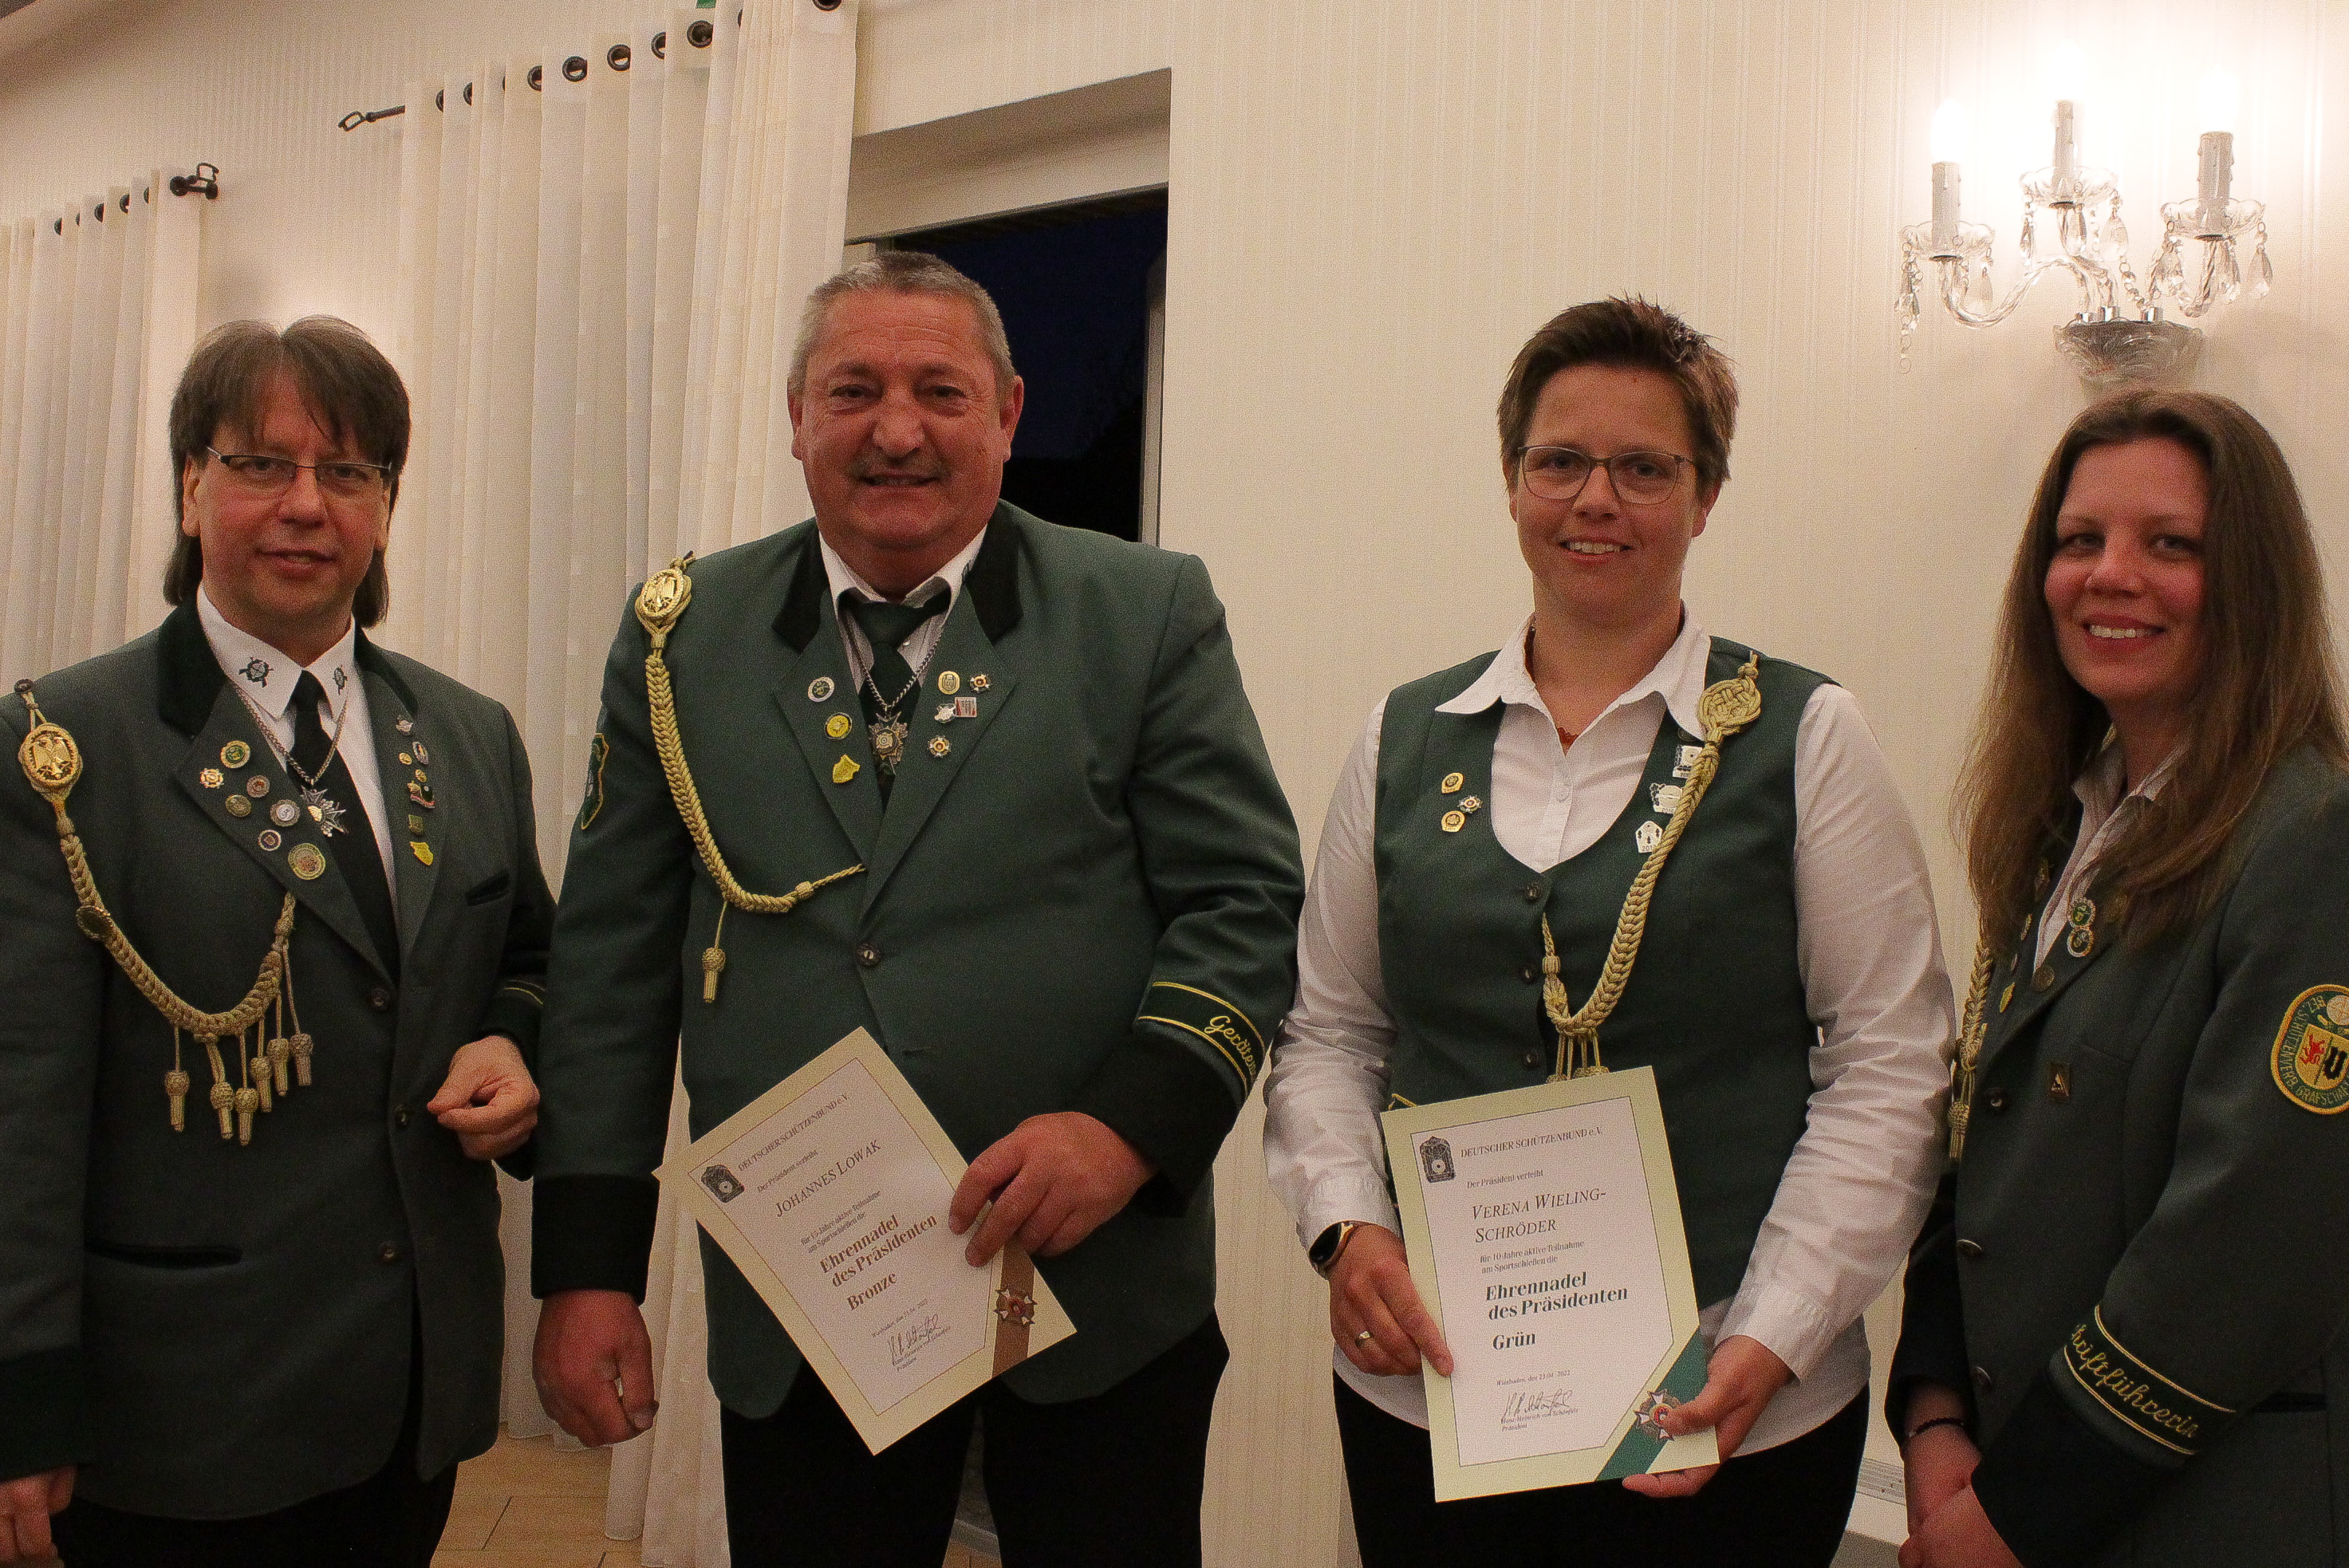 Für zehnjährige Vorstandstätigkeit erhielt Verena Wieling-Schröder die grüne Ehrennadel des Präsidenen vom Deutschen Schützenbund und Johannes Lowak die bronzene Ehrennadel für 15 Jahre Vorstandstätigkeit.